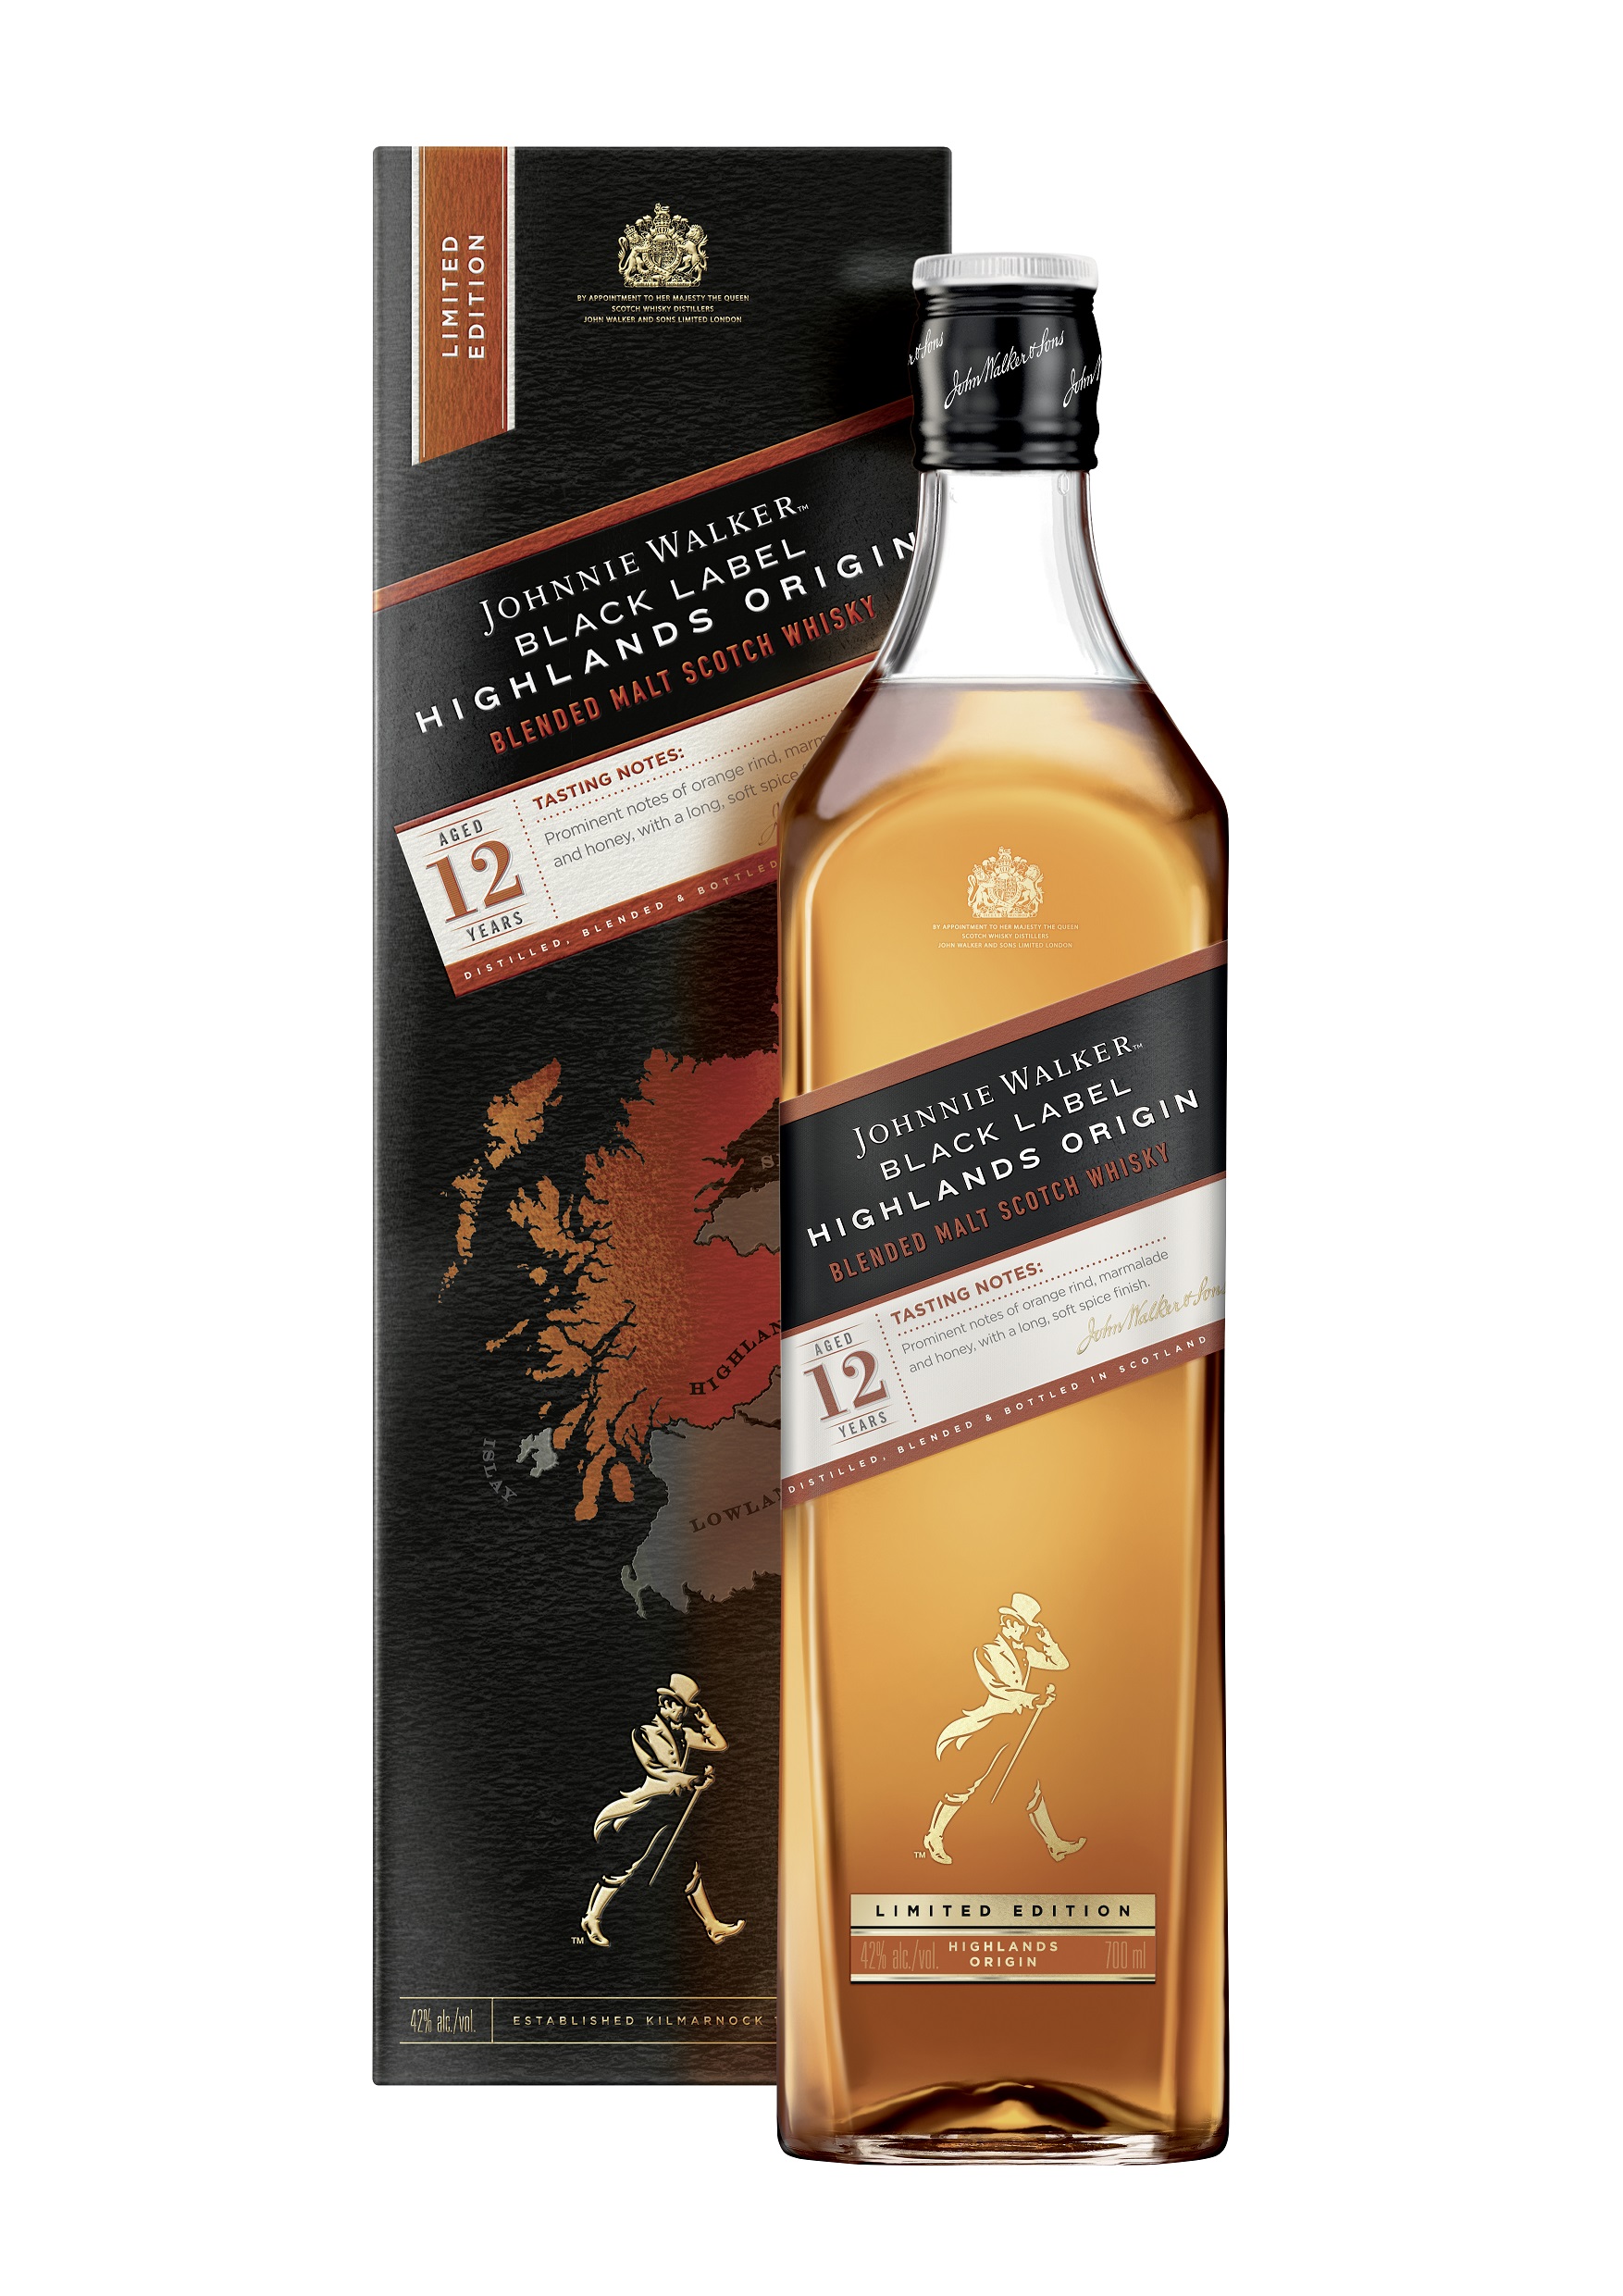 Johnnie Walker Black Label Highlands Origin Whisky